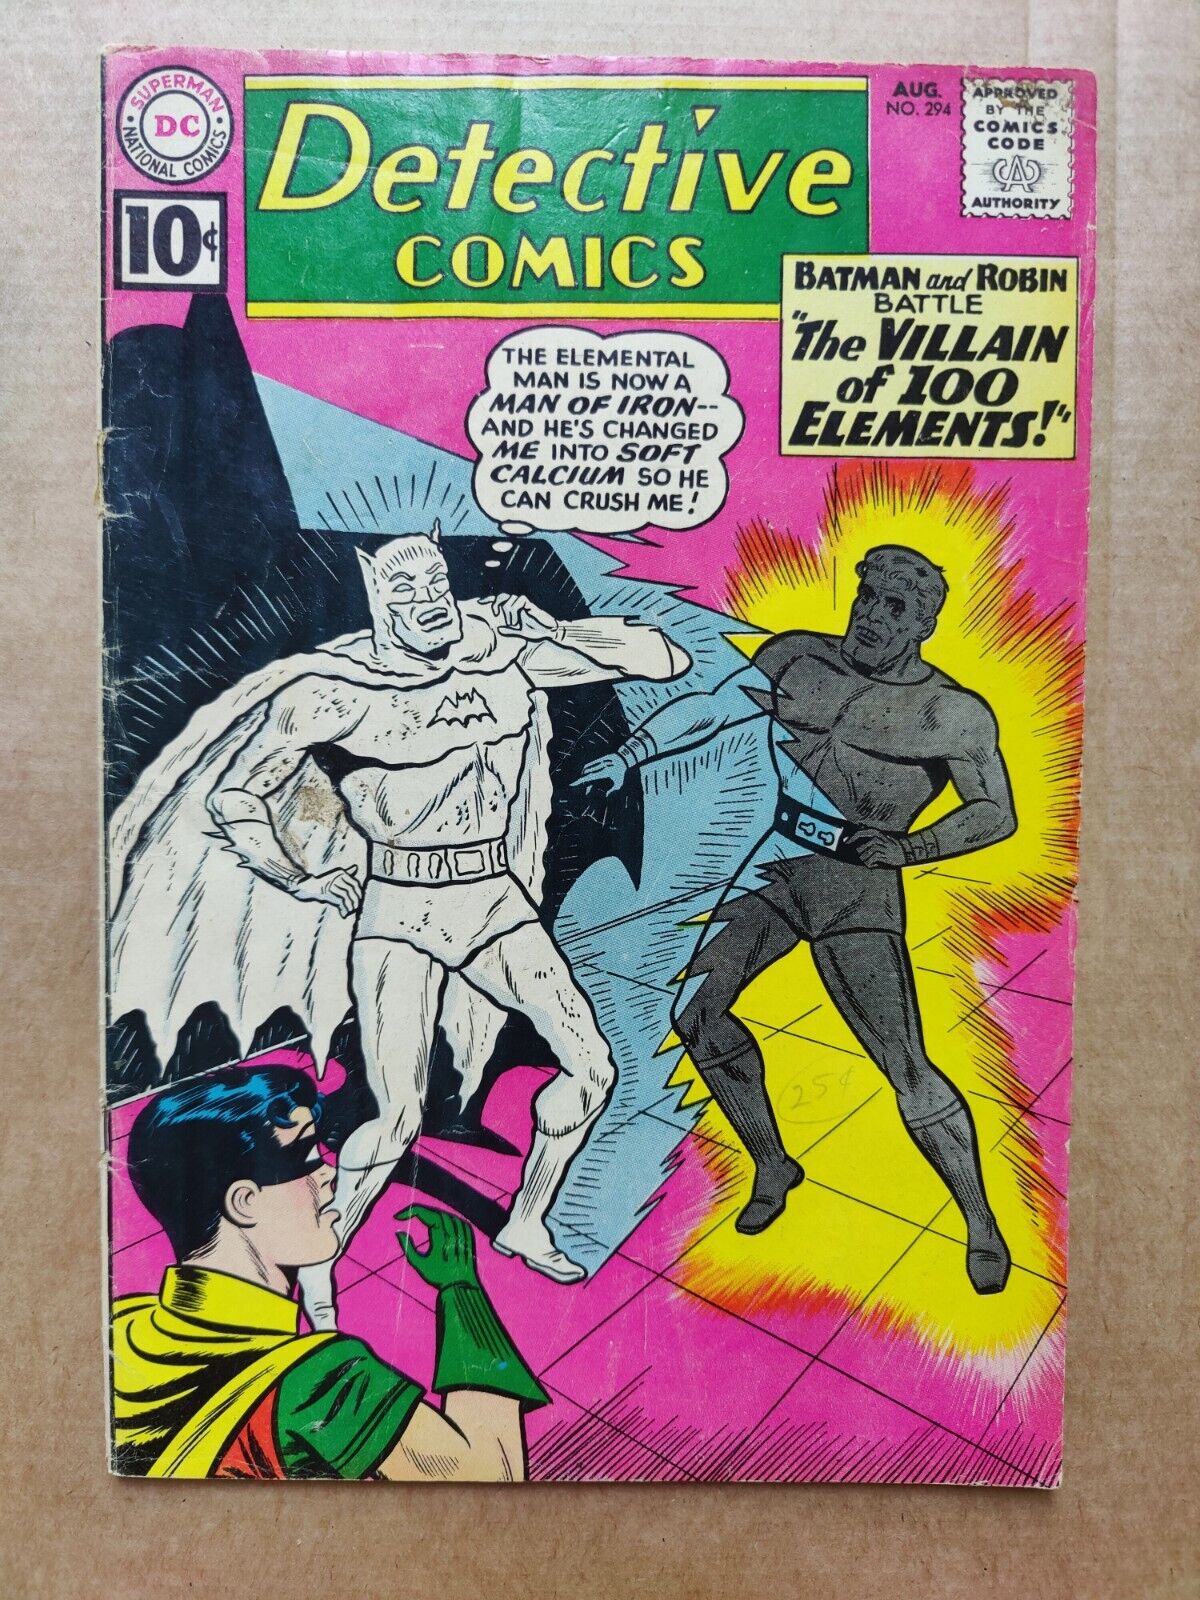 DC Detective Comics #294 GD Low Grade Batman Aquaman Martian Manhunter